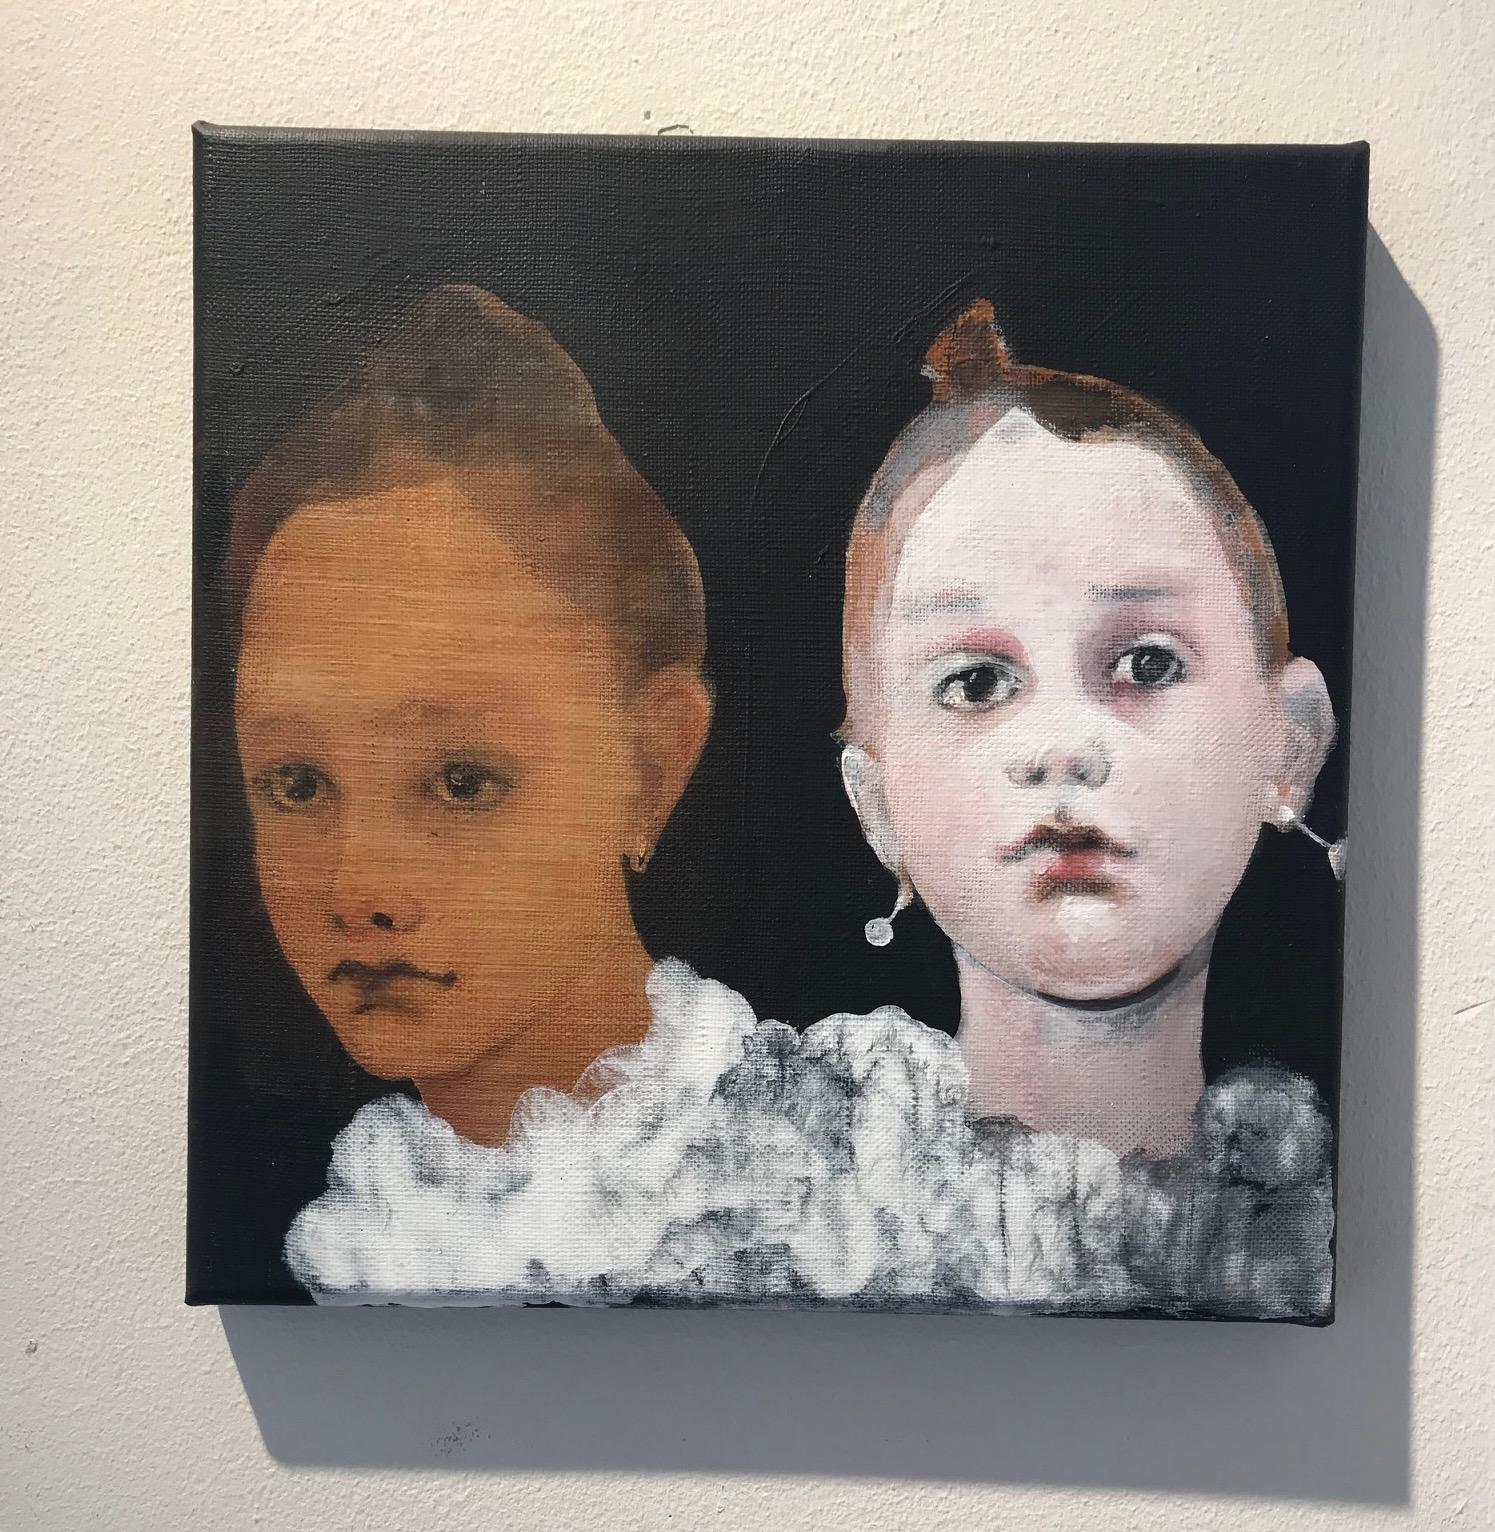 Ohrringe'' Niederländisches Contemporary Portrait eines Mädchens mit Ohrringen – Painting von Edith Snoek